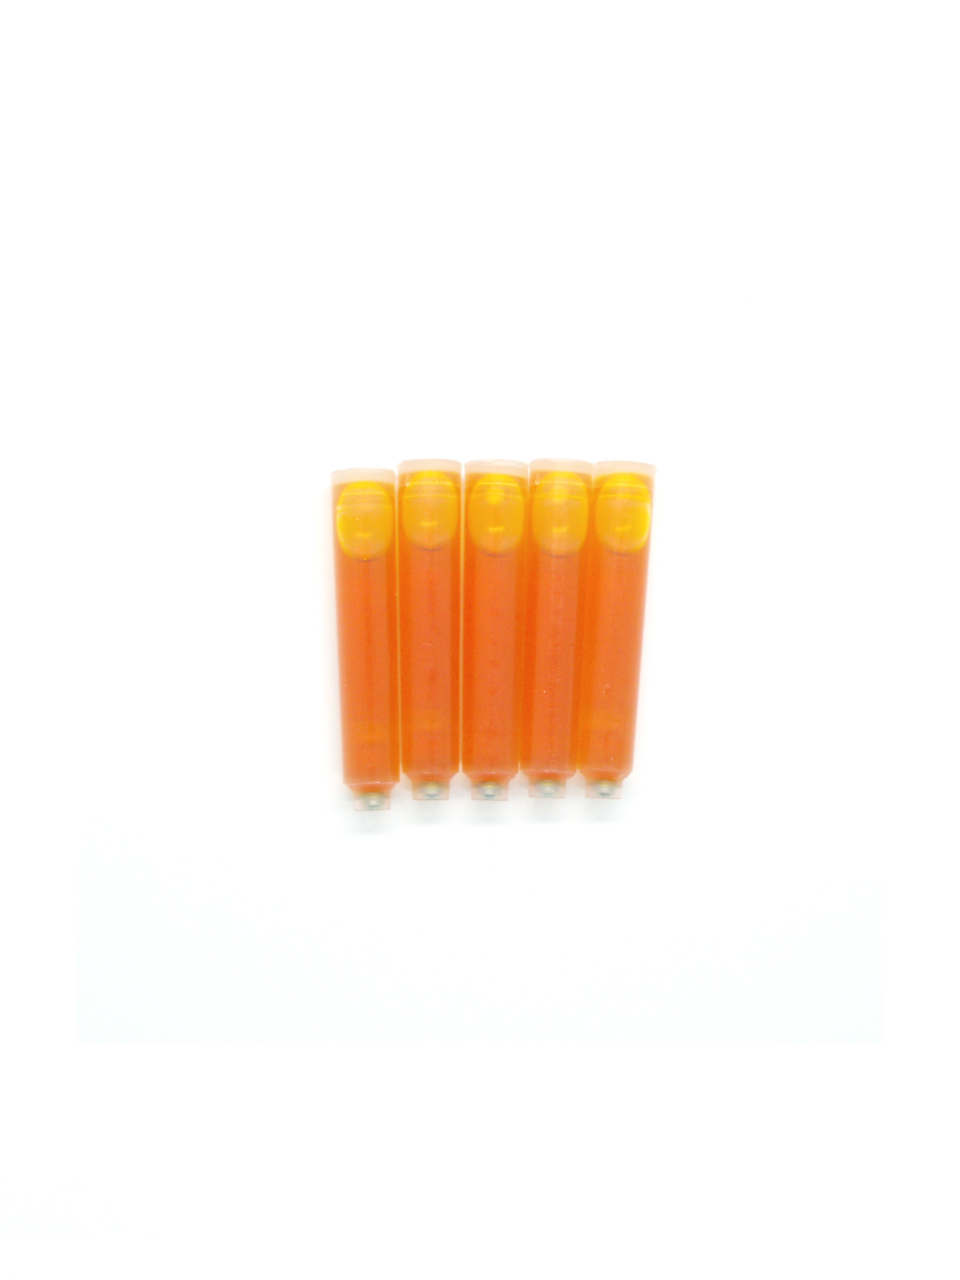 PenConverter Ink Cartridges For Duke Fountain Pens (Yellow)